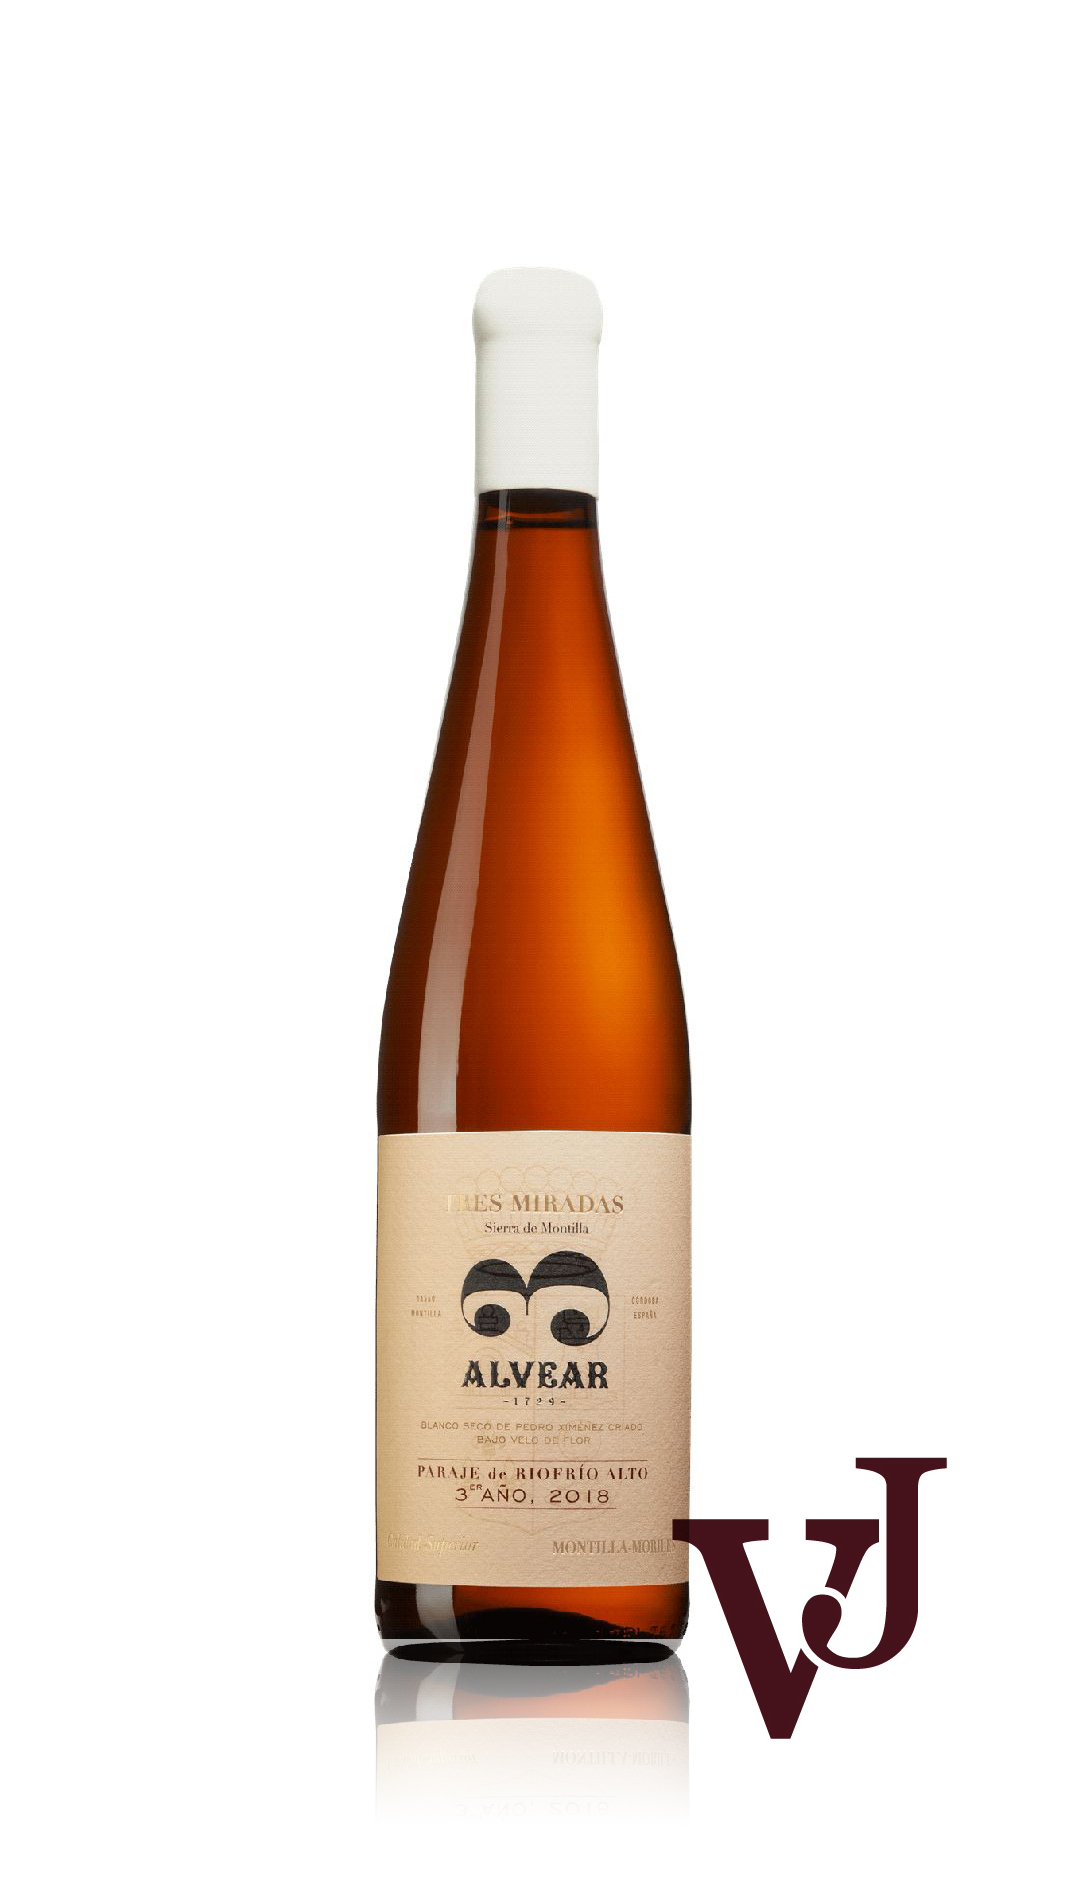 Vitt Vin - Paraje de Riofrío Alto artikel nummer 9479001 från producenten Alvear från området Spanien